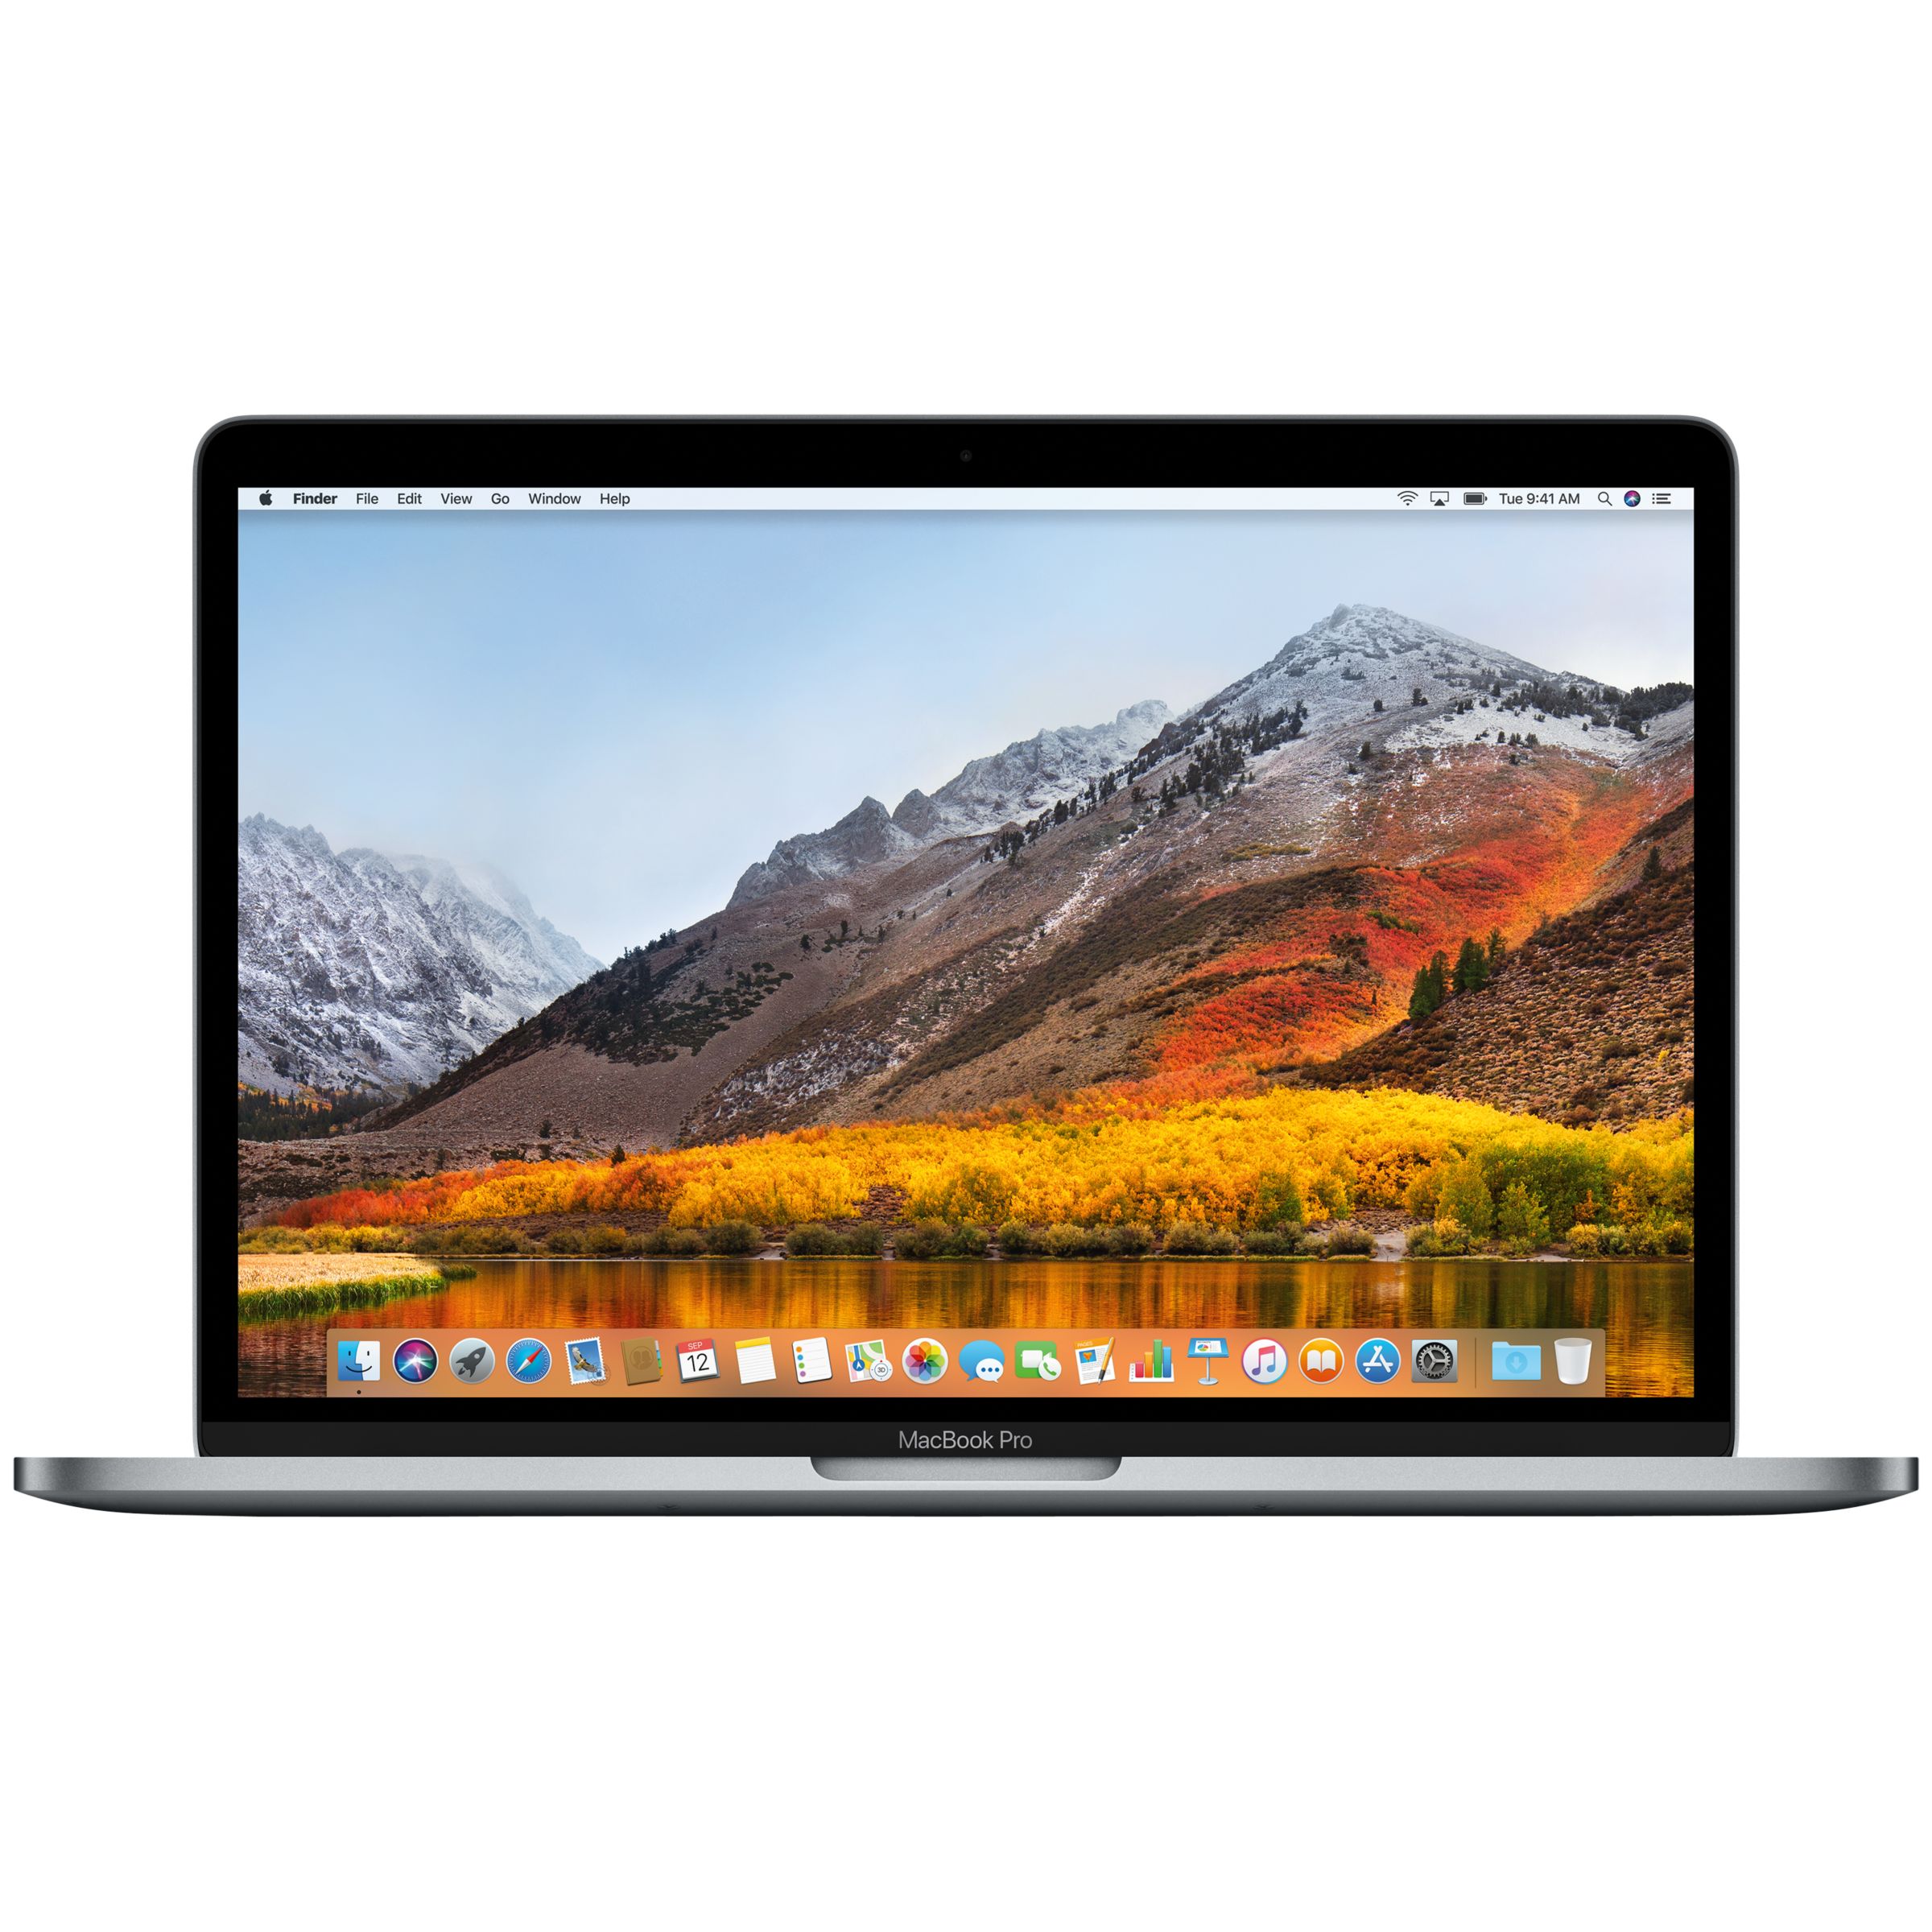 2017 Apple MacBook Pro 13, Intel Core i5, 8GB RAM, 128GB SSD